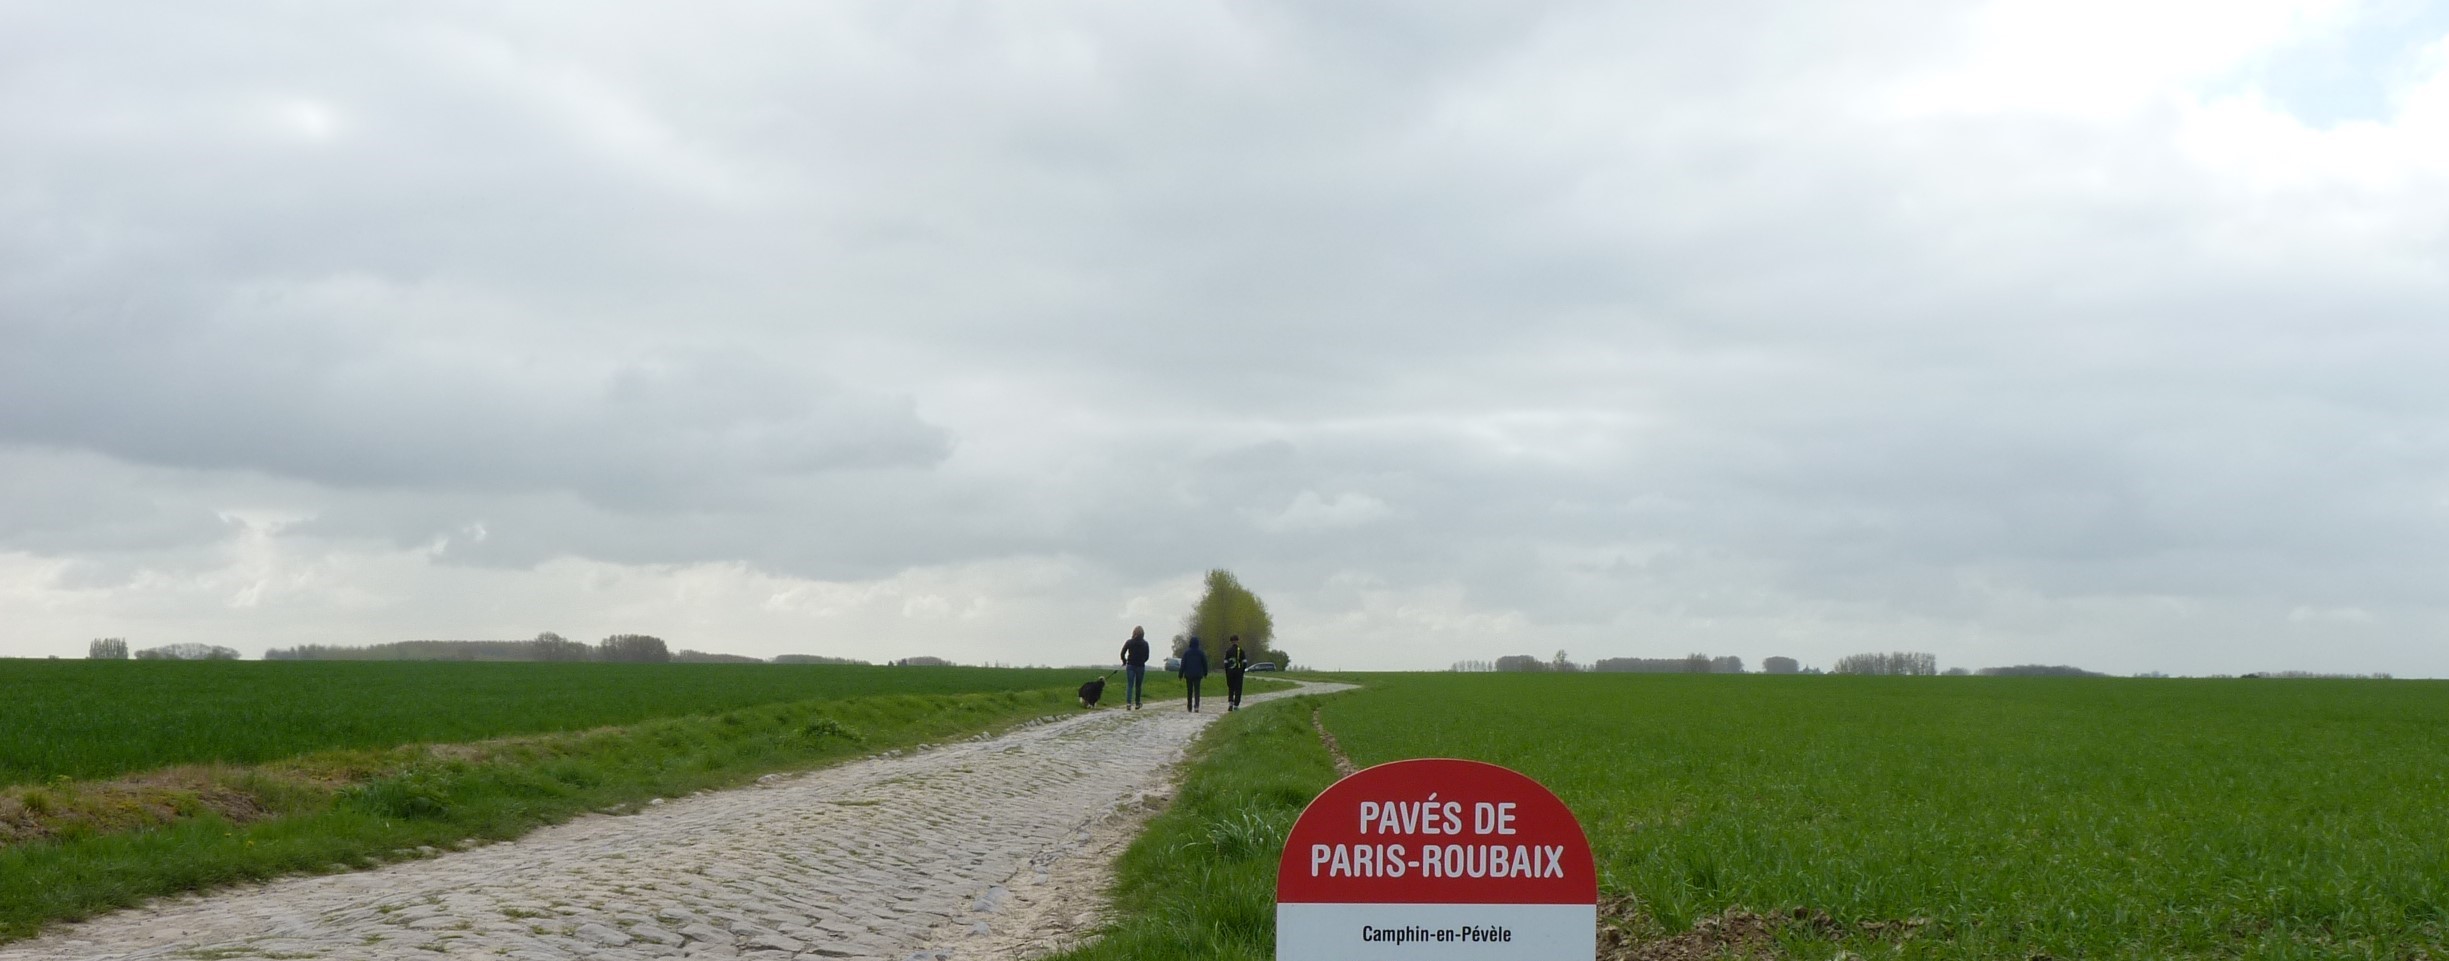 Zondag Paris-Roubaix - Wout van Aert verkende 't parcours